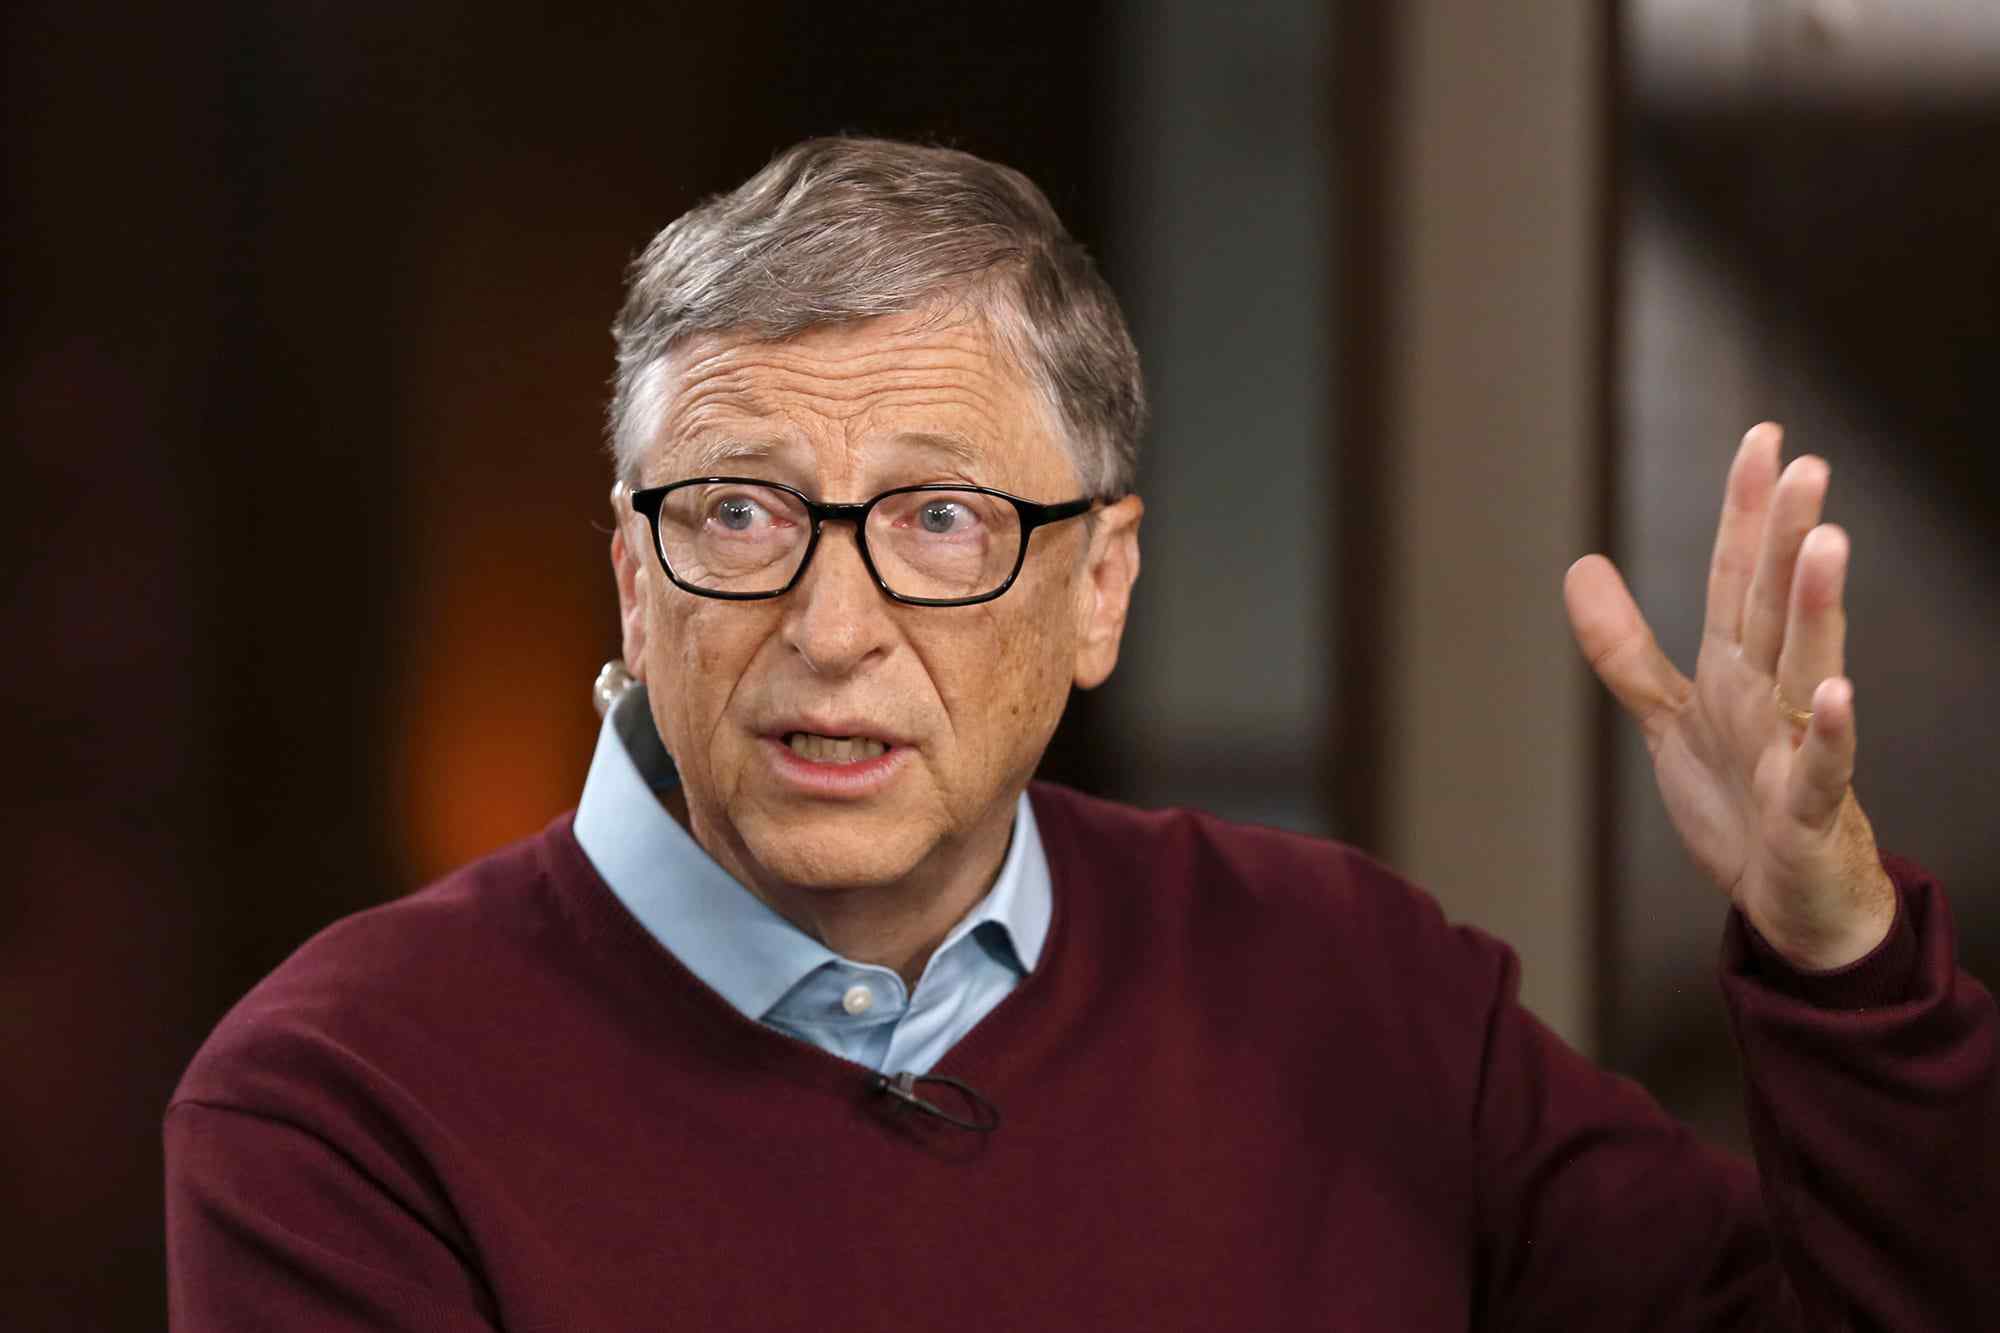  Pse Bill Gates përfshihet në teoritë konspirative për koronavirusin?!